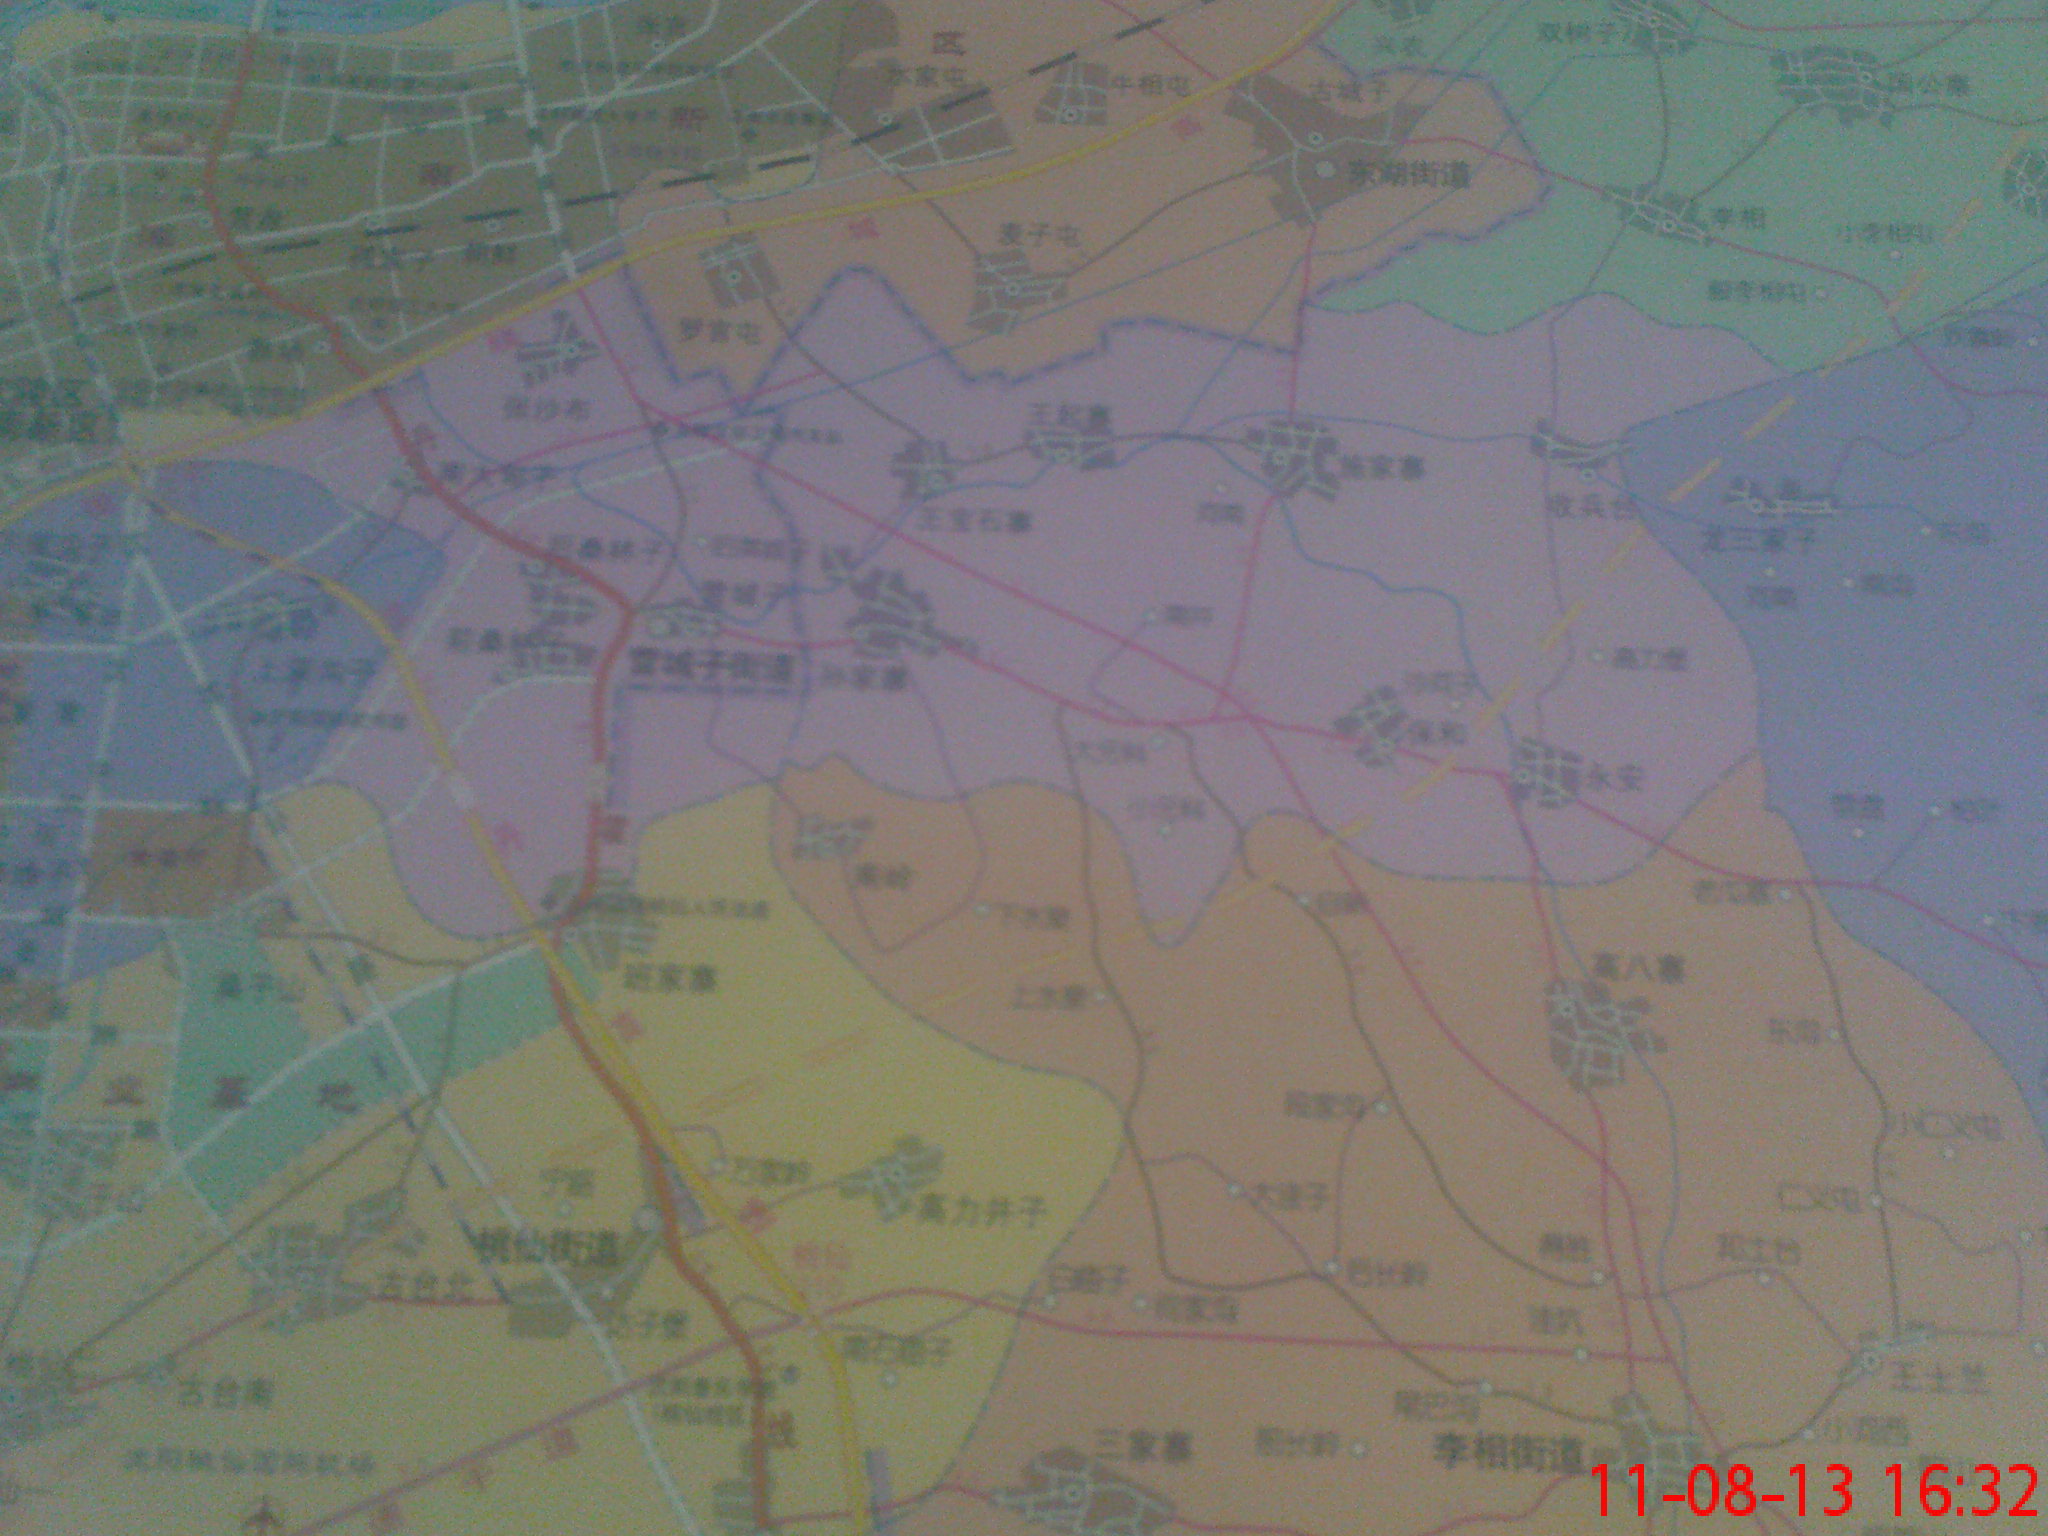 沈阳市各区最新调整行政区划地图(不给力的手机照的,很不清晰,凑合看